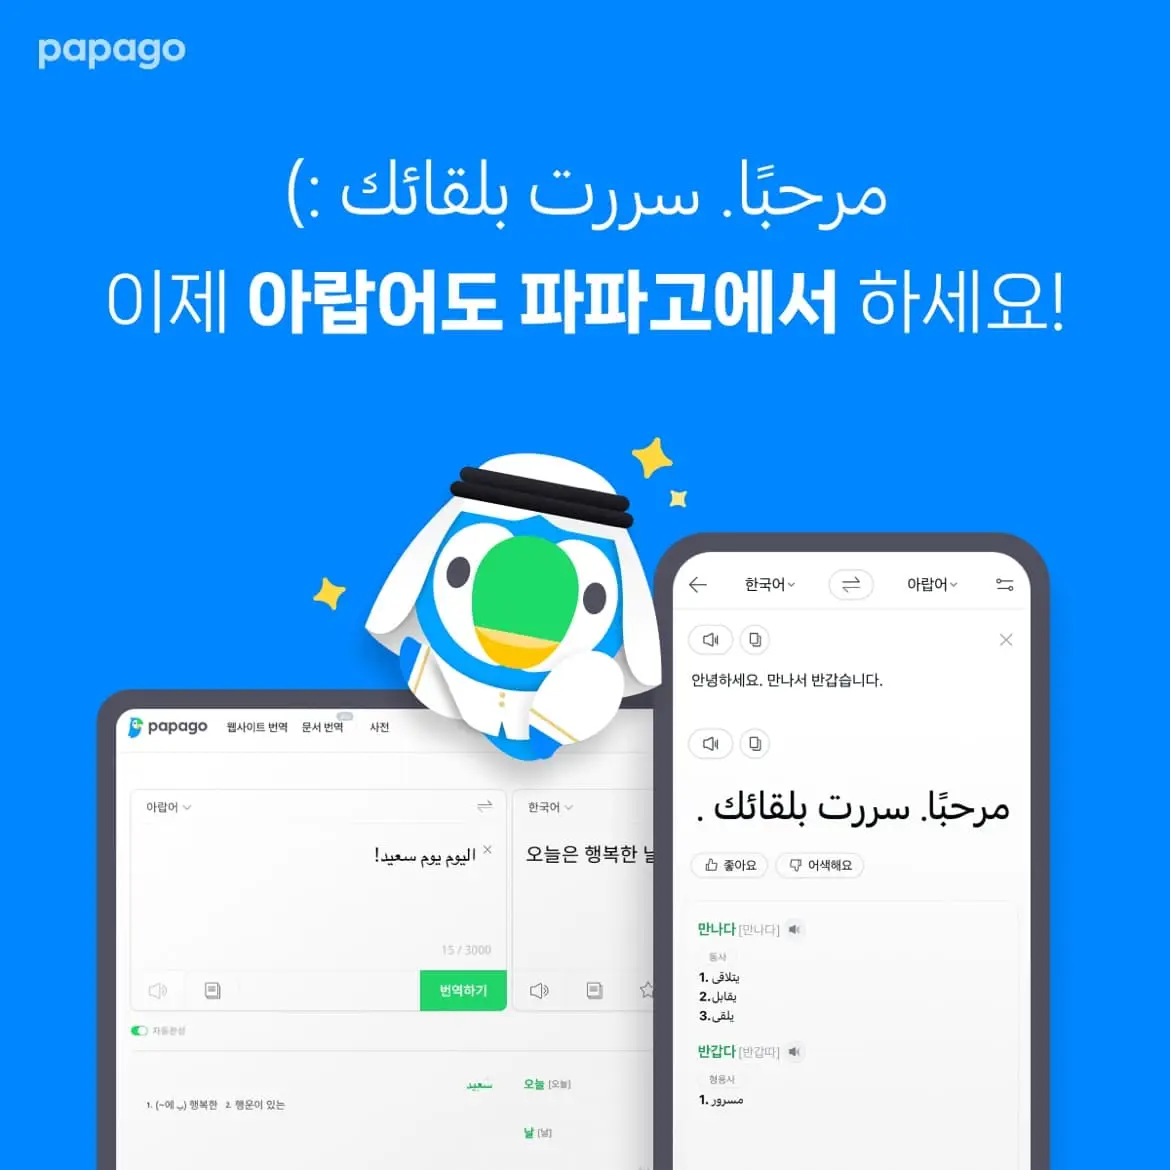 Những tính năng chính của Naver Papago